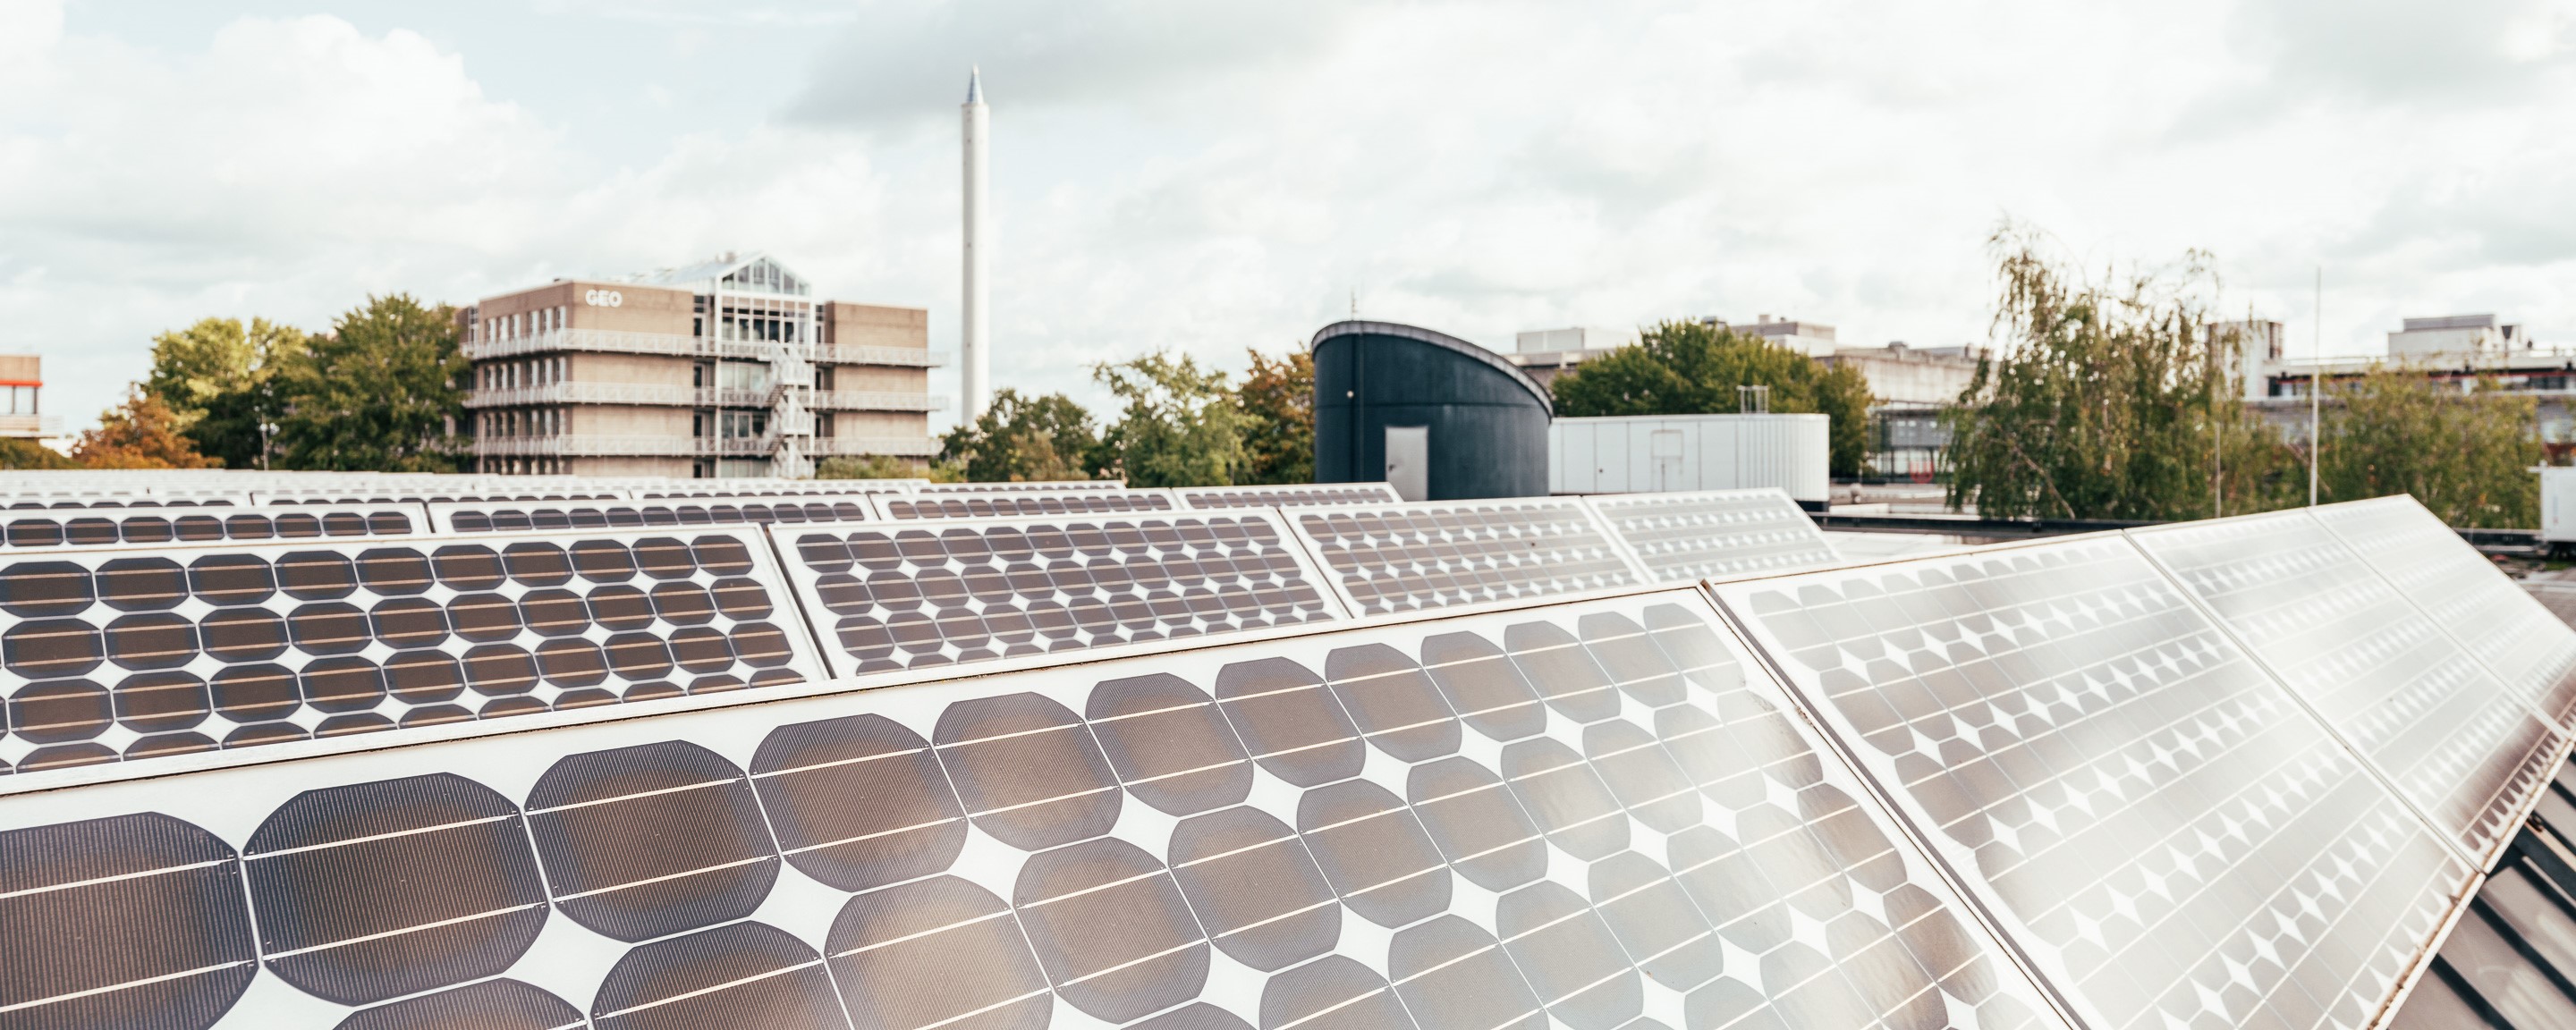 Mehrere Photovoltaikanlagen auf dem Dach der Mensa der Universit?t Bremen. Im Hintergrund sind Teile das Campus zu sehen